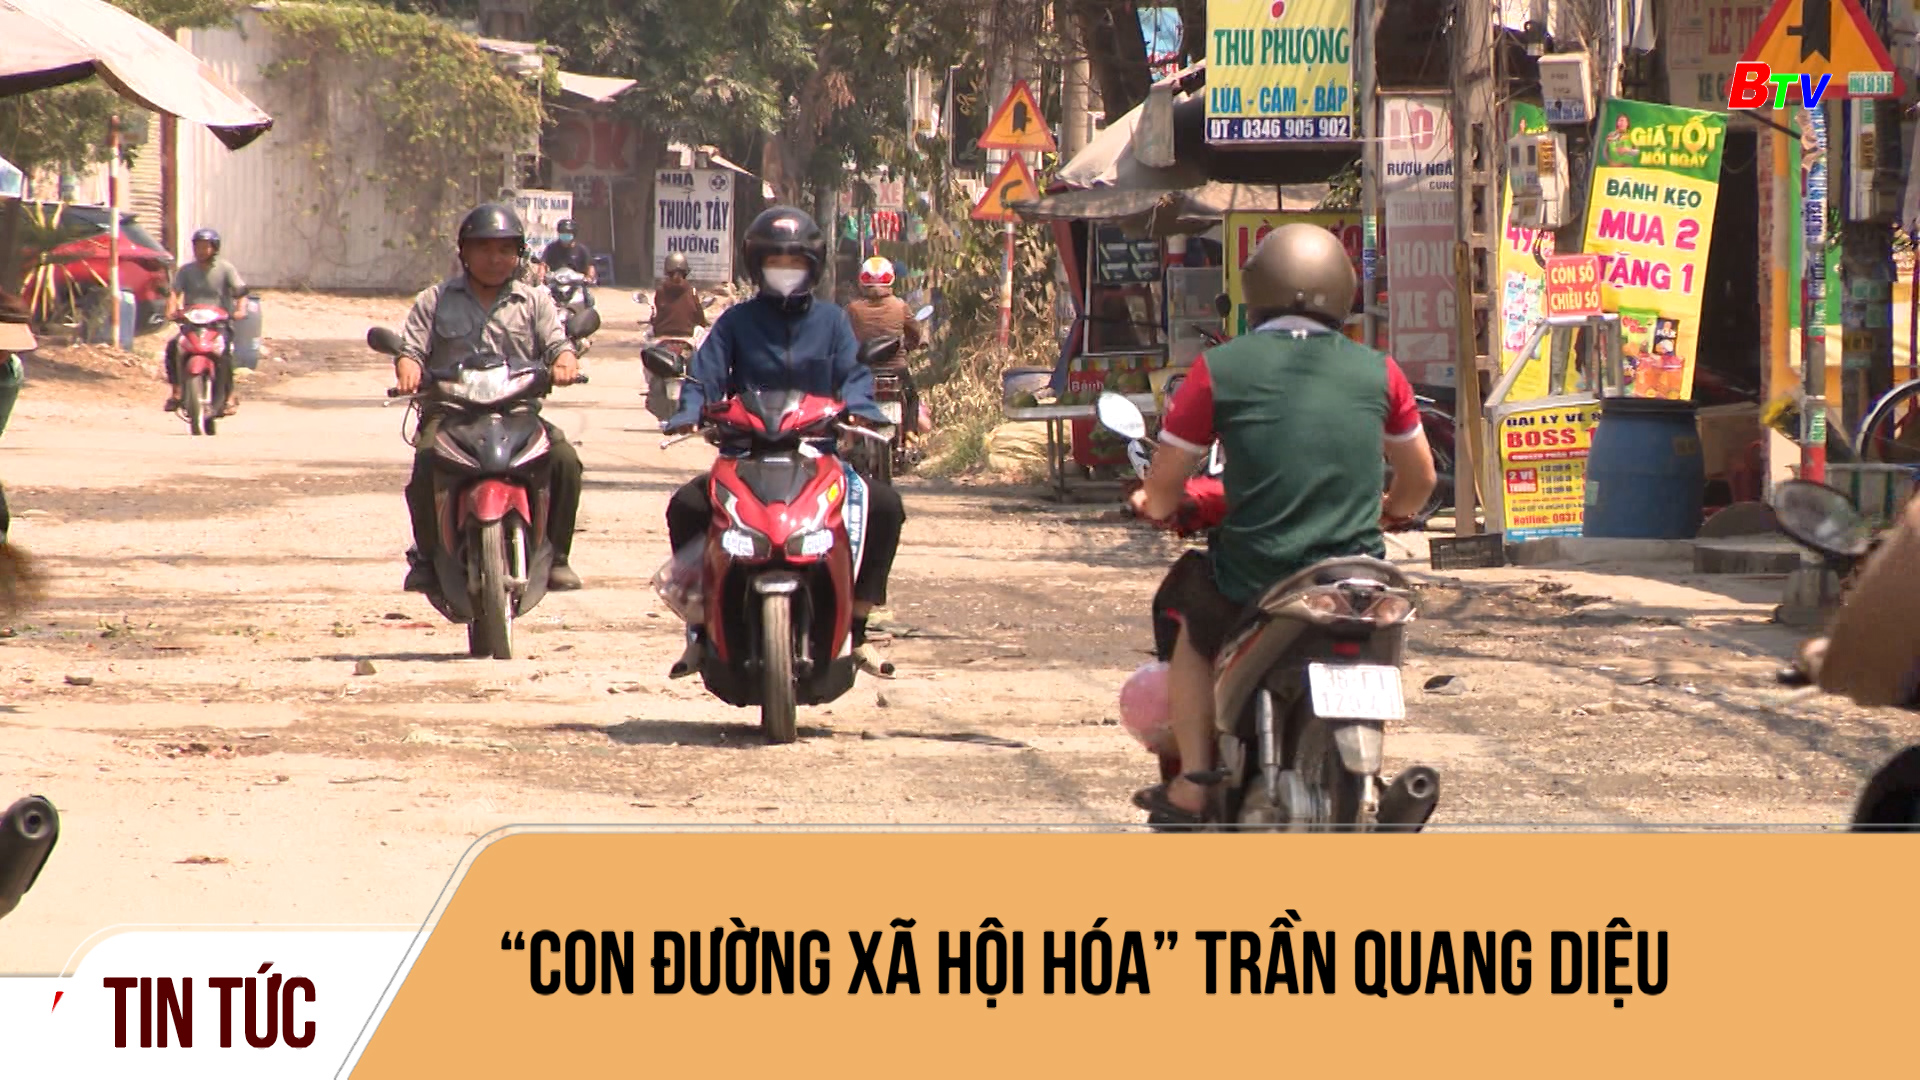 “Con đường xã hội hóa” Trần Quang Diệu